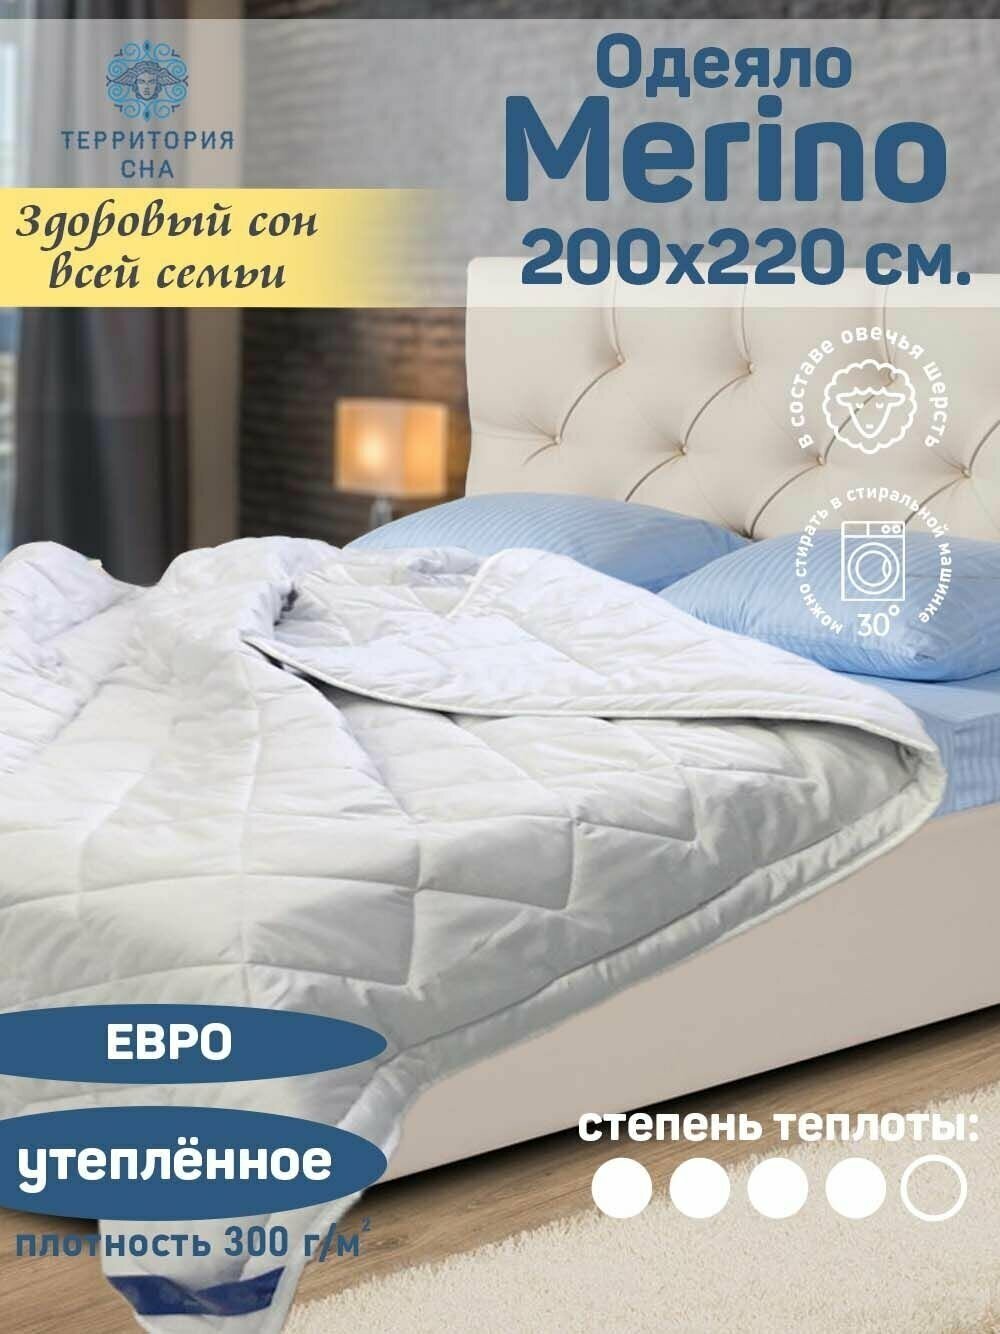 Одеяло Merino 200х220 см. с натуральным наполнителем - шерстью мериноса, легкое, теплое, всесезонное, евро